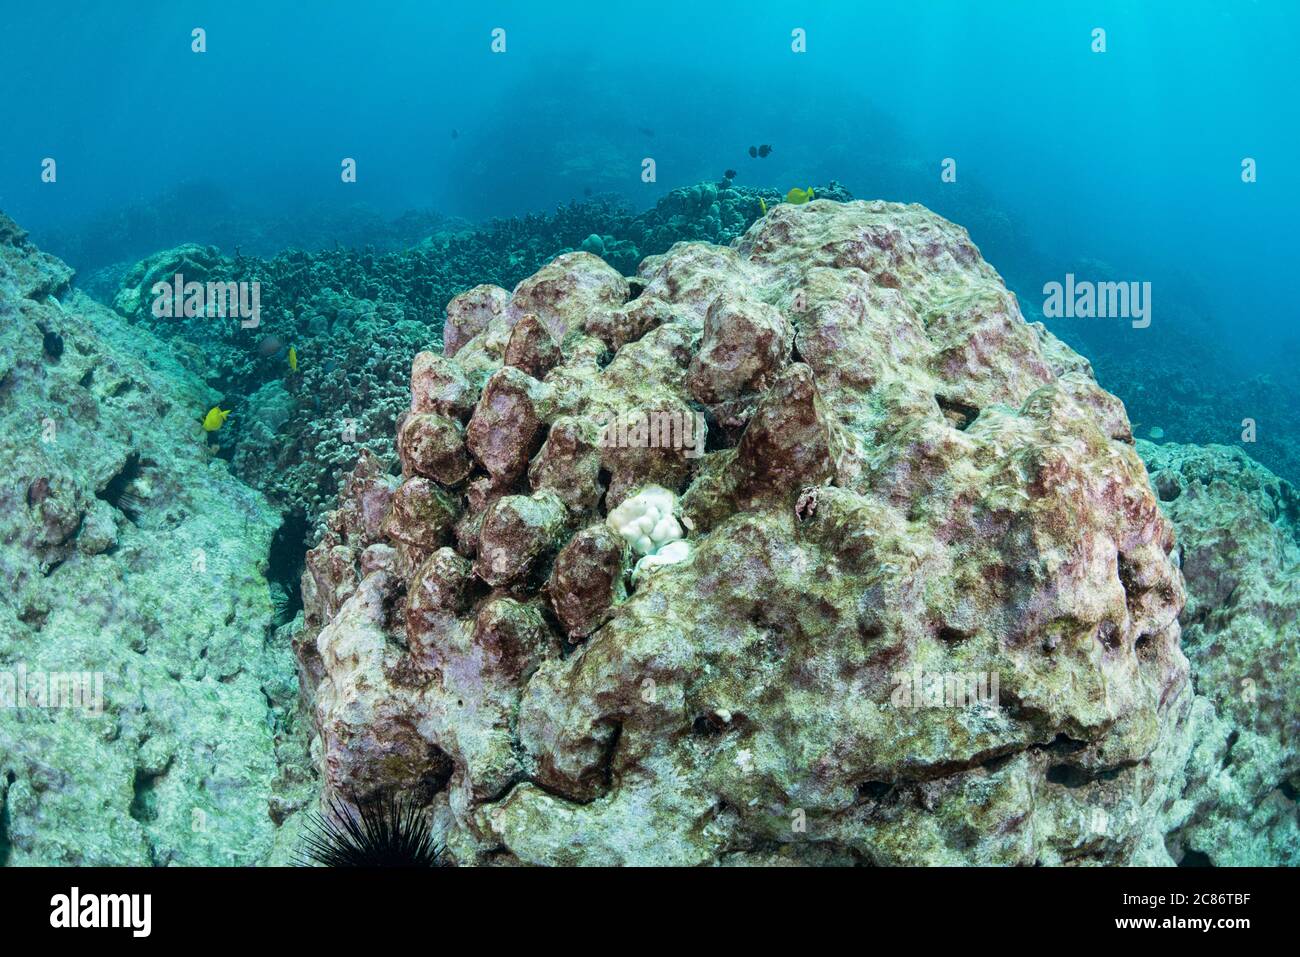 Ein großer Kopf der Lappen Koralle, die durch Bleichen starb hat eine leichte Schicht von Algen umhüllend; eine kleine Rekrut Kolonie, die beigefügt hat auch gebleicht Stockfoto